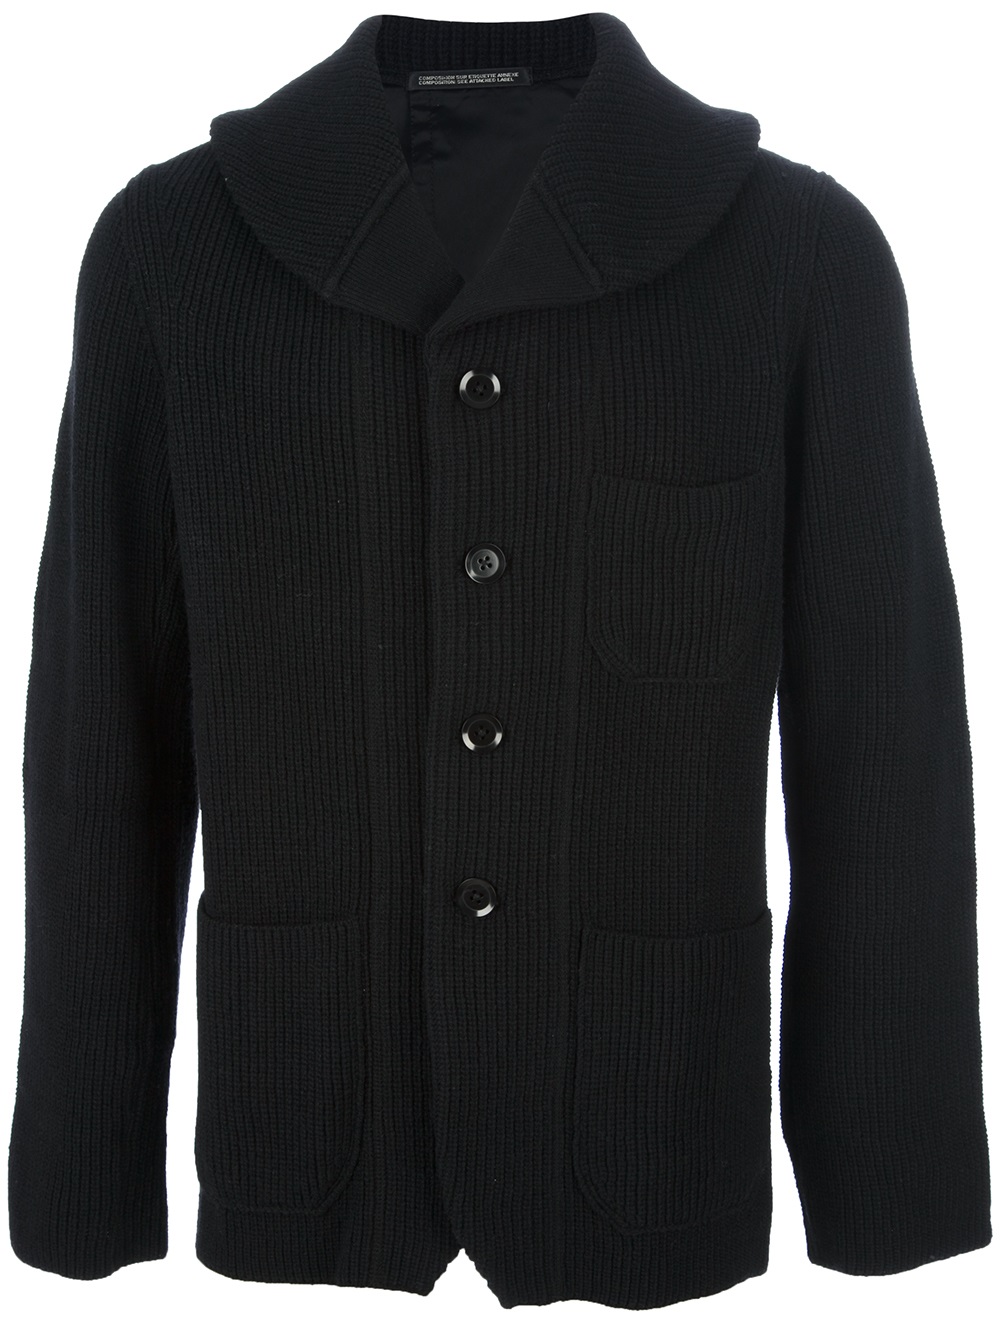 Yohji Yamamoto Ribbed Shawl Collar Cardigan in Black for Men - Lyst